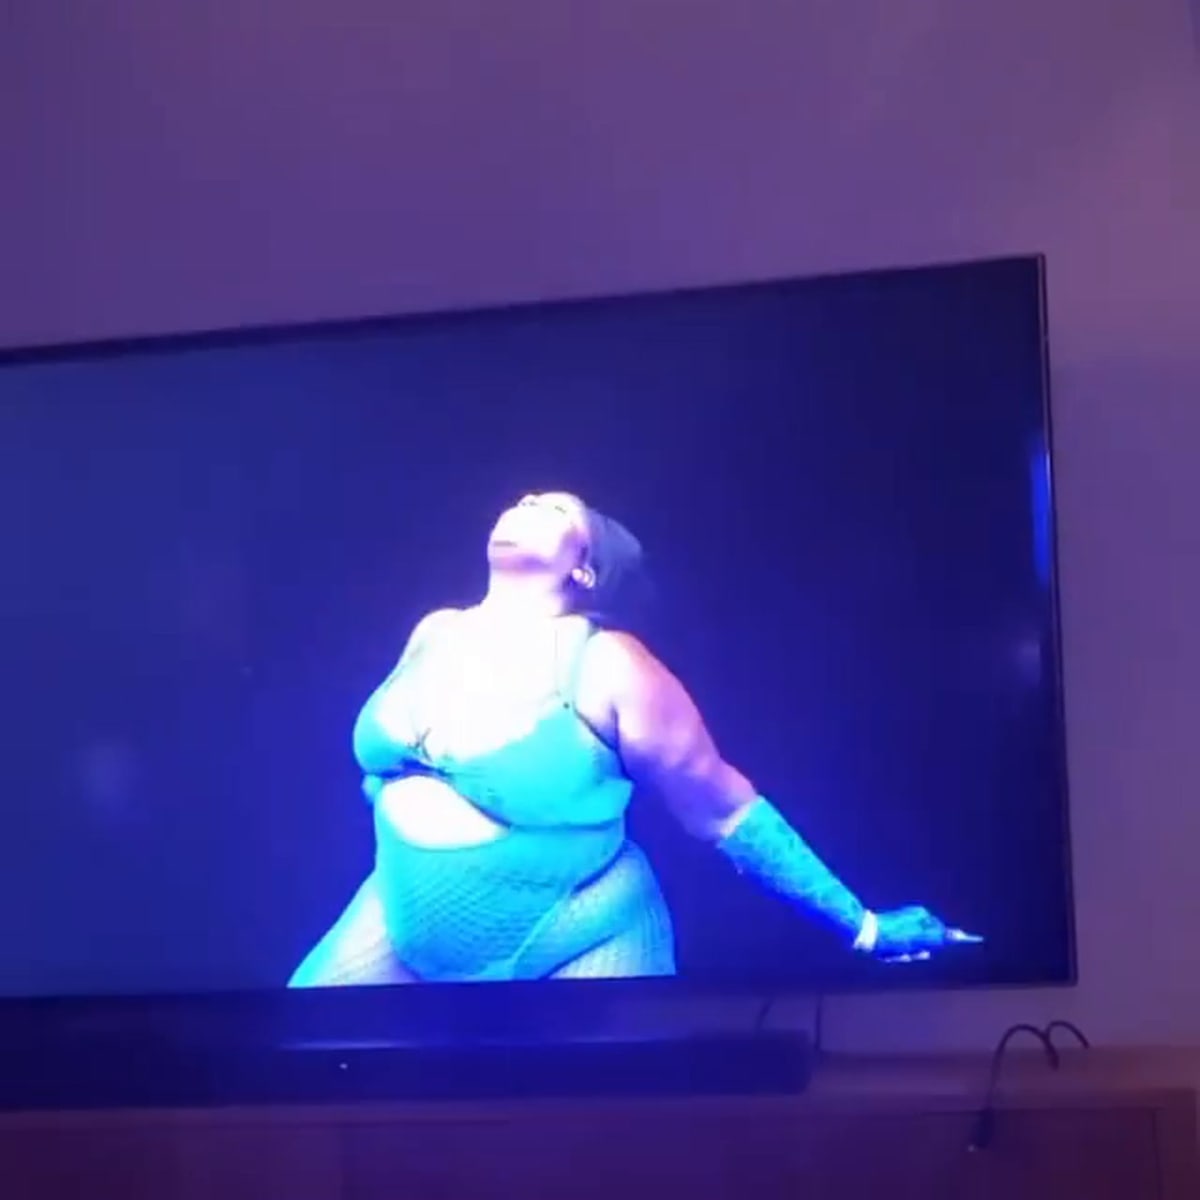 Lizzo Leaks Video Of Herself 'Struggle Twerking' In Lingerie!